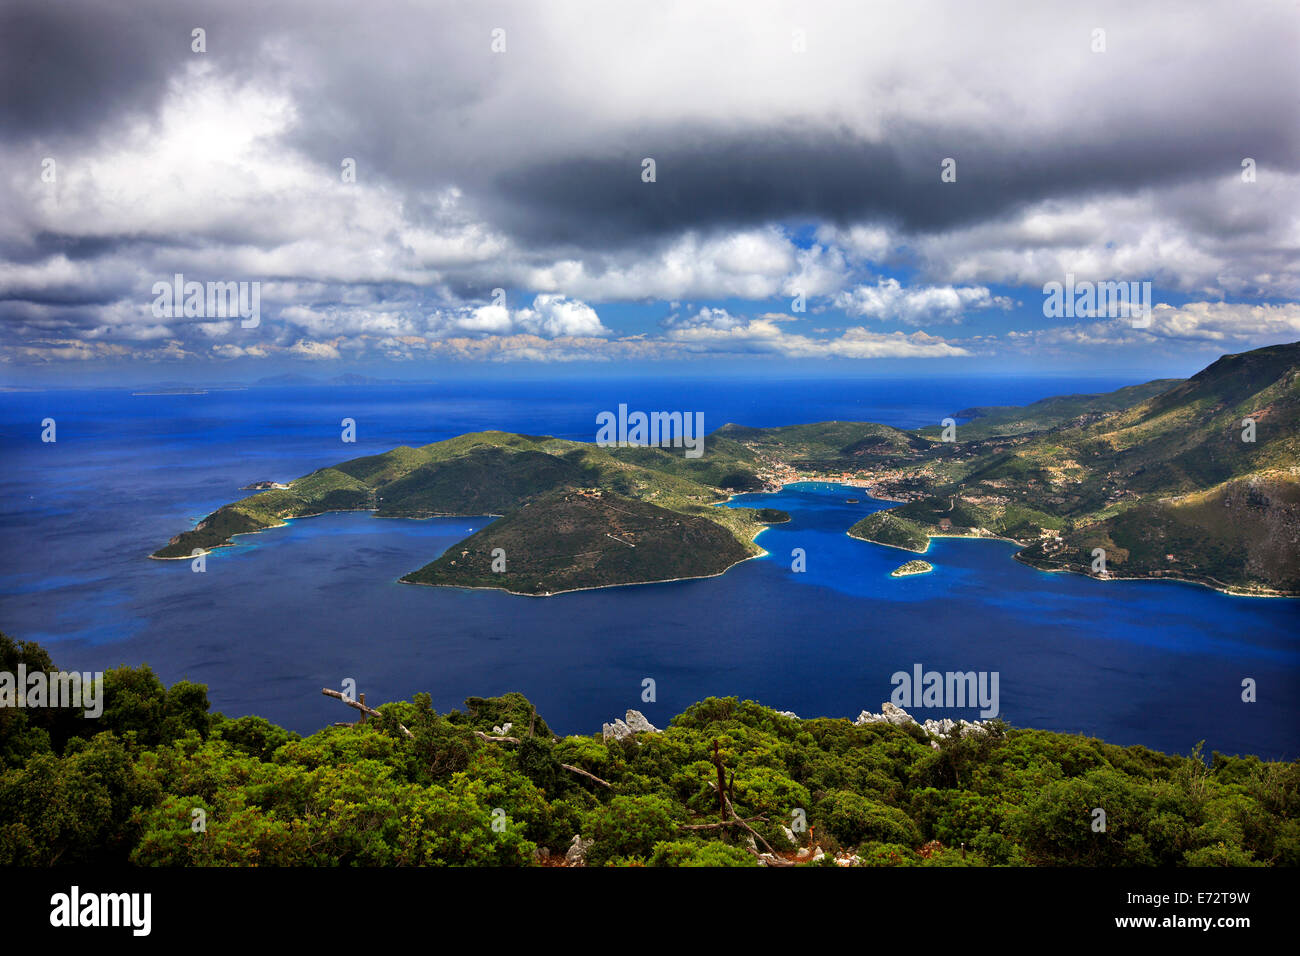 Vista panoramica della baia di Vathi, la "capitale" di Ithaca ("Itaca"), isola, mare Ionio, Eptanisa ('Sanche Isole "), in Grecia. Foto Stock